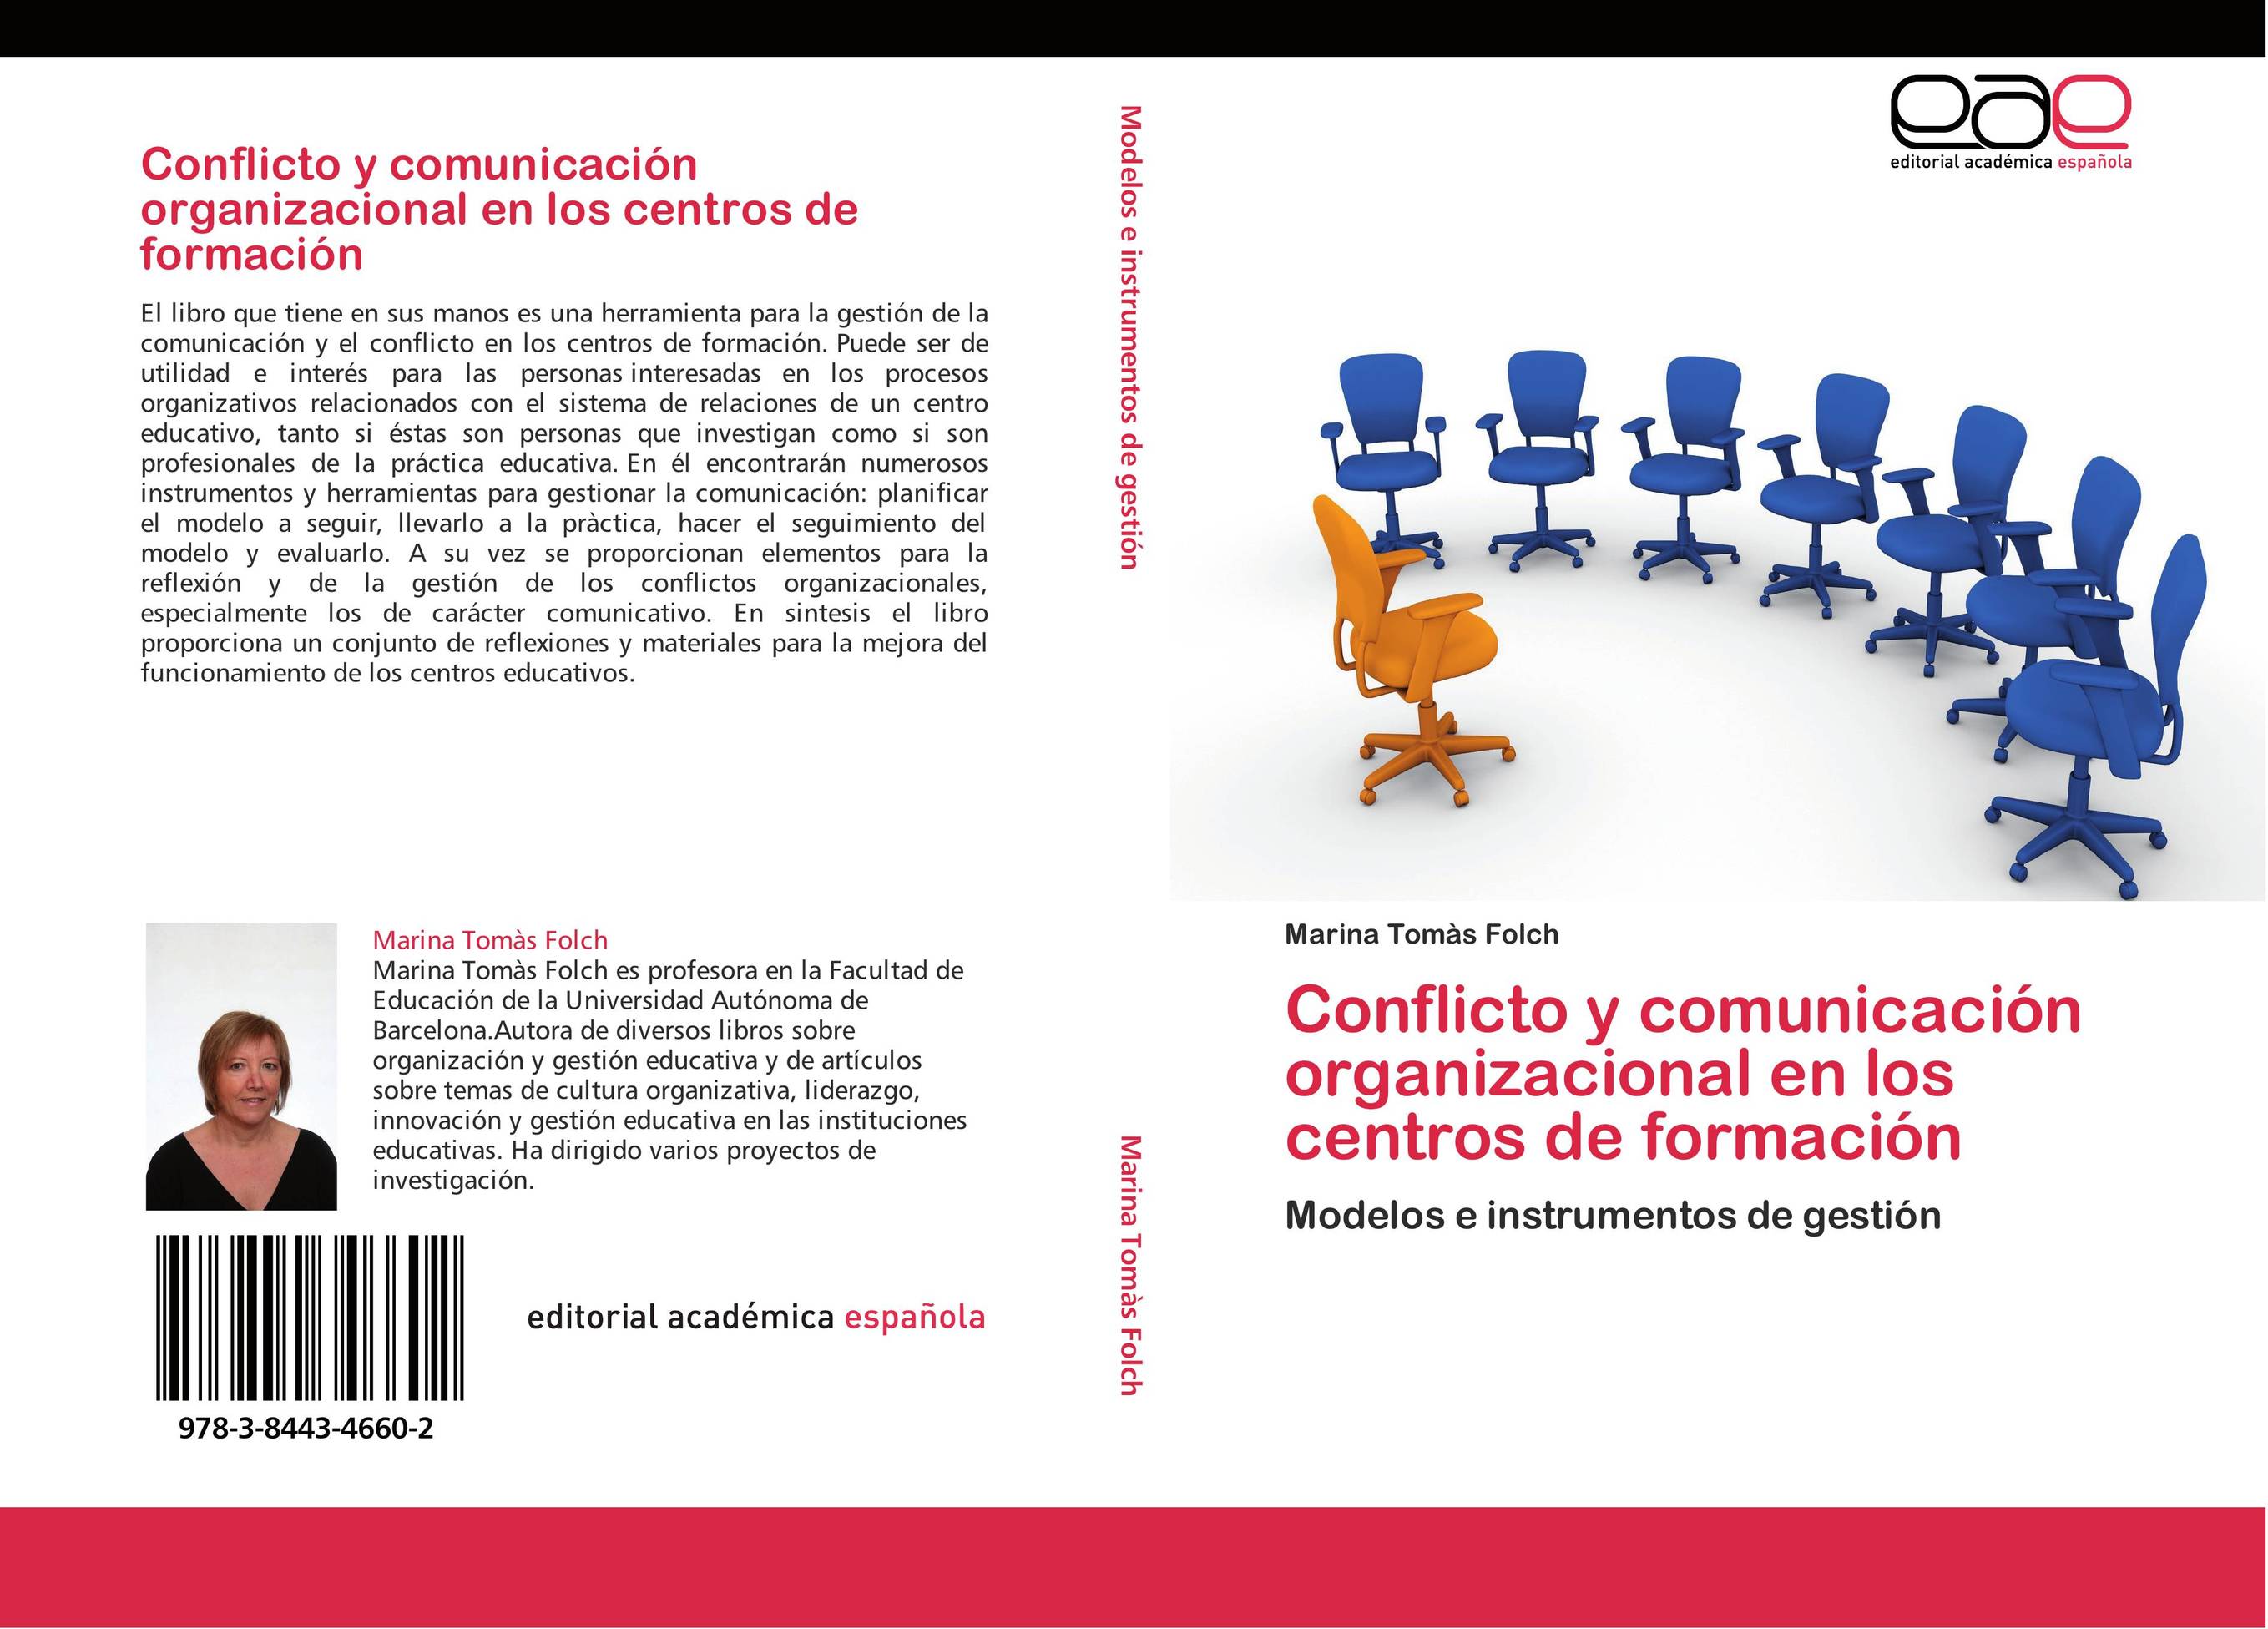 Conflicto y comunicación organizacional en los centros de formación